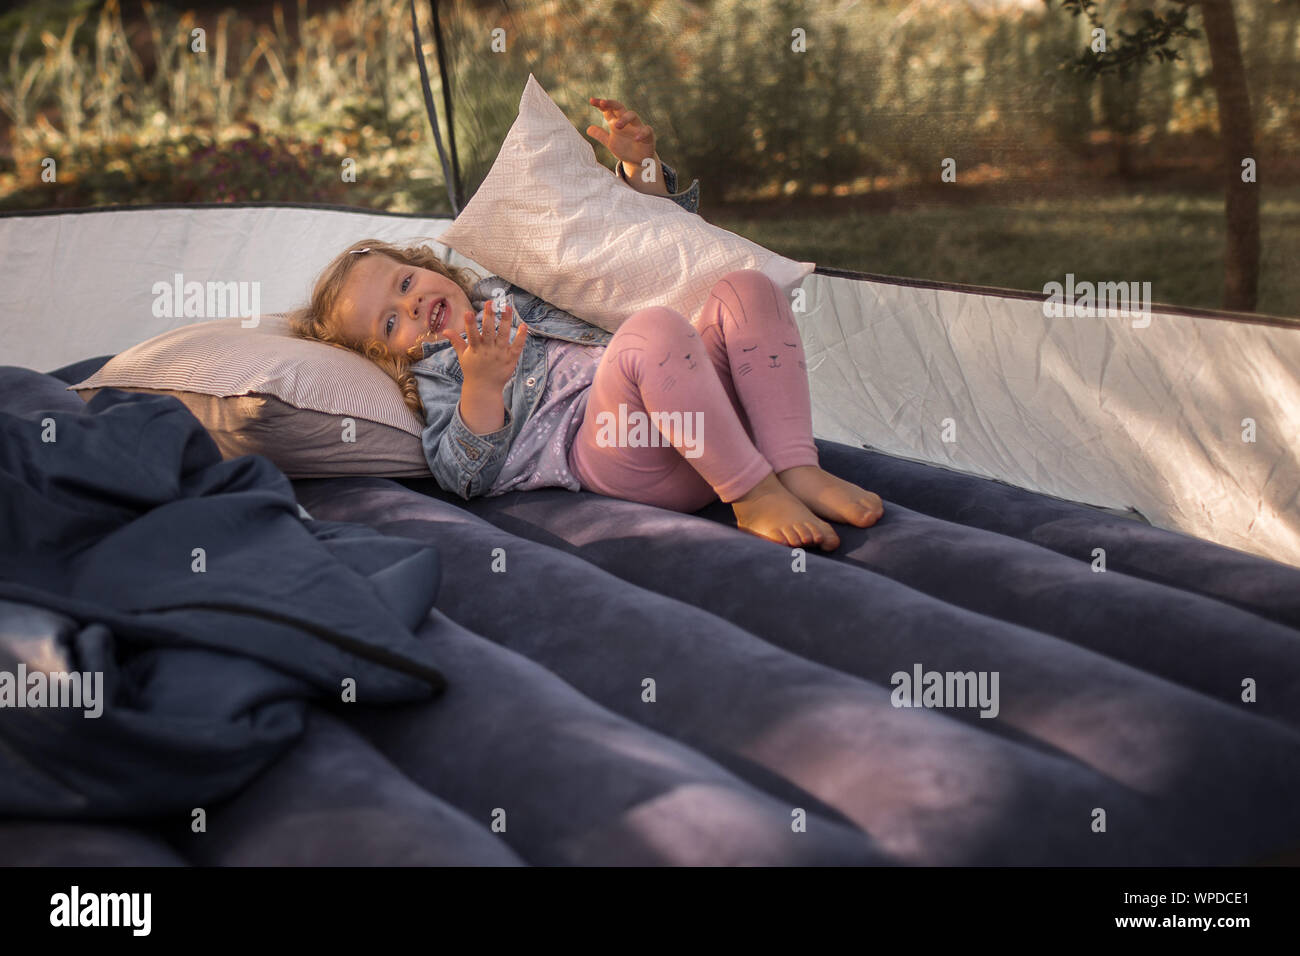 Peu, heureux bambin fille, allongé sur un matelas pneumatique dans une tente, sur un voyage de camping Banque D'Images